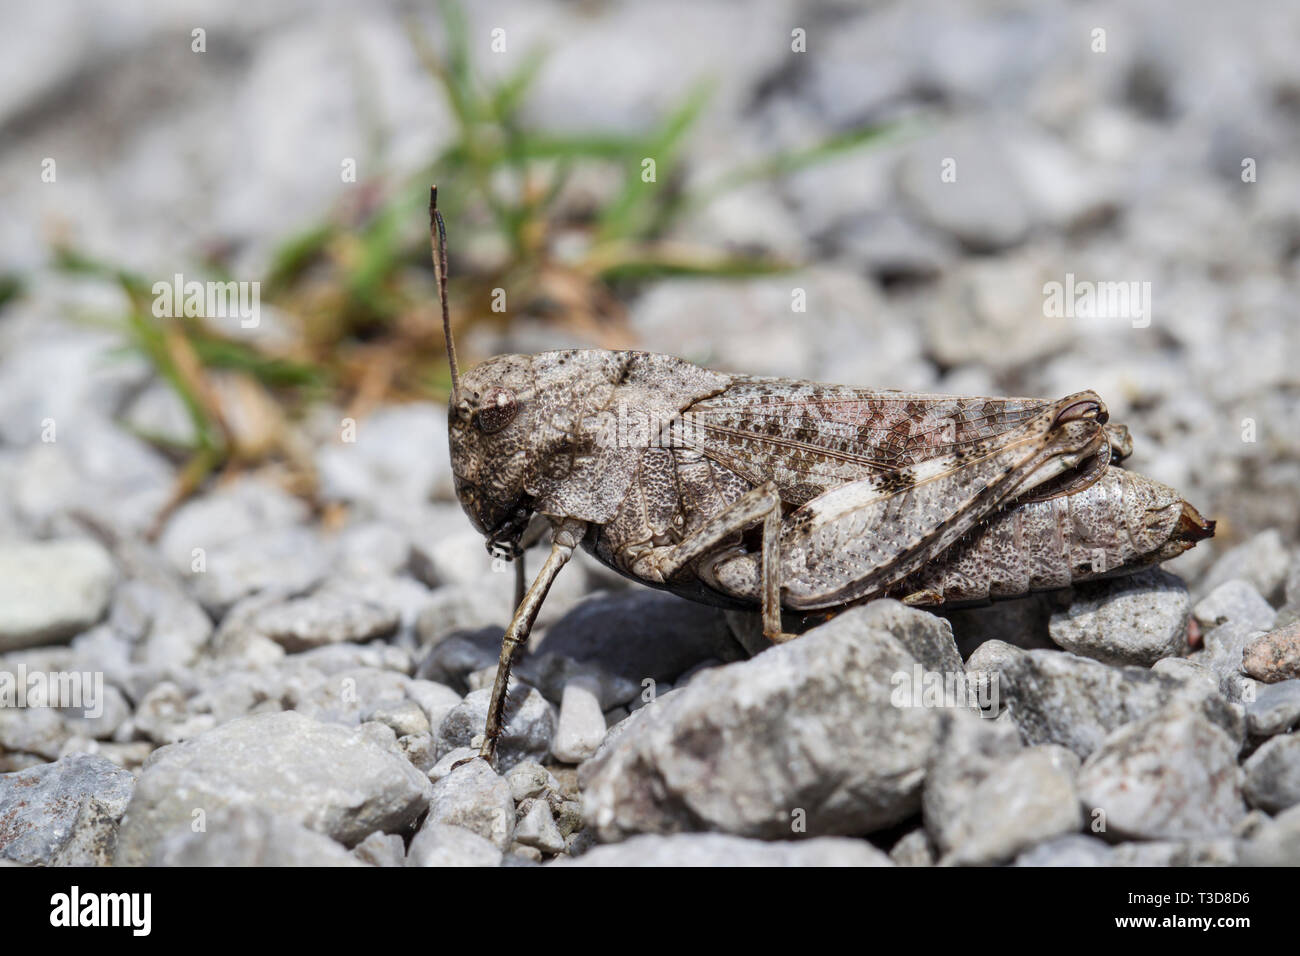 Rotfluegelige Schnarrschrecke, Psophus stridulus, bat grasshopper Banque D'Images